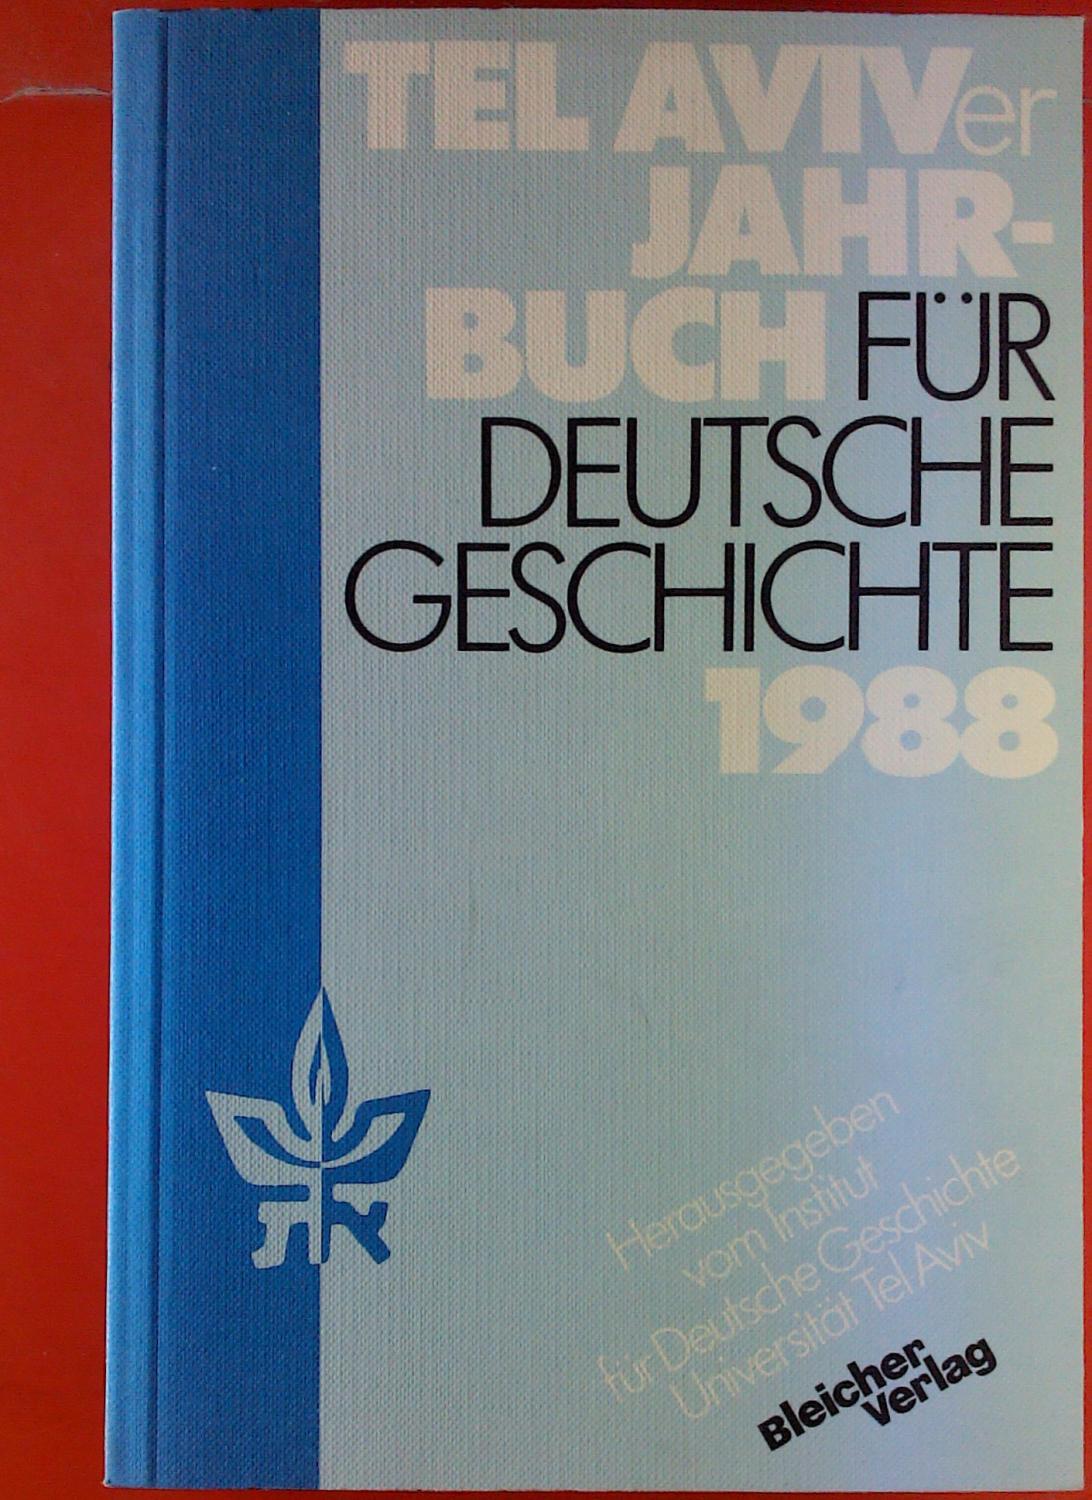 Tel Aviver Jahrbuch für Deutsche Geschichte 1988 - Nationalsozialismus aus heutiger Perspektive, Band 17